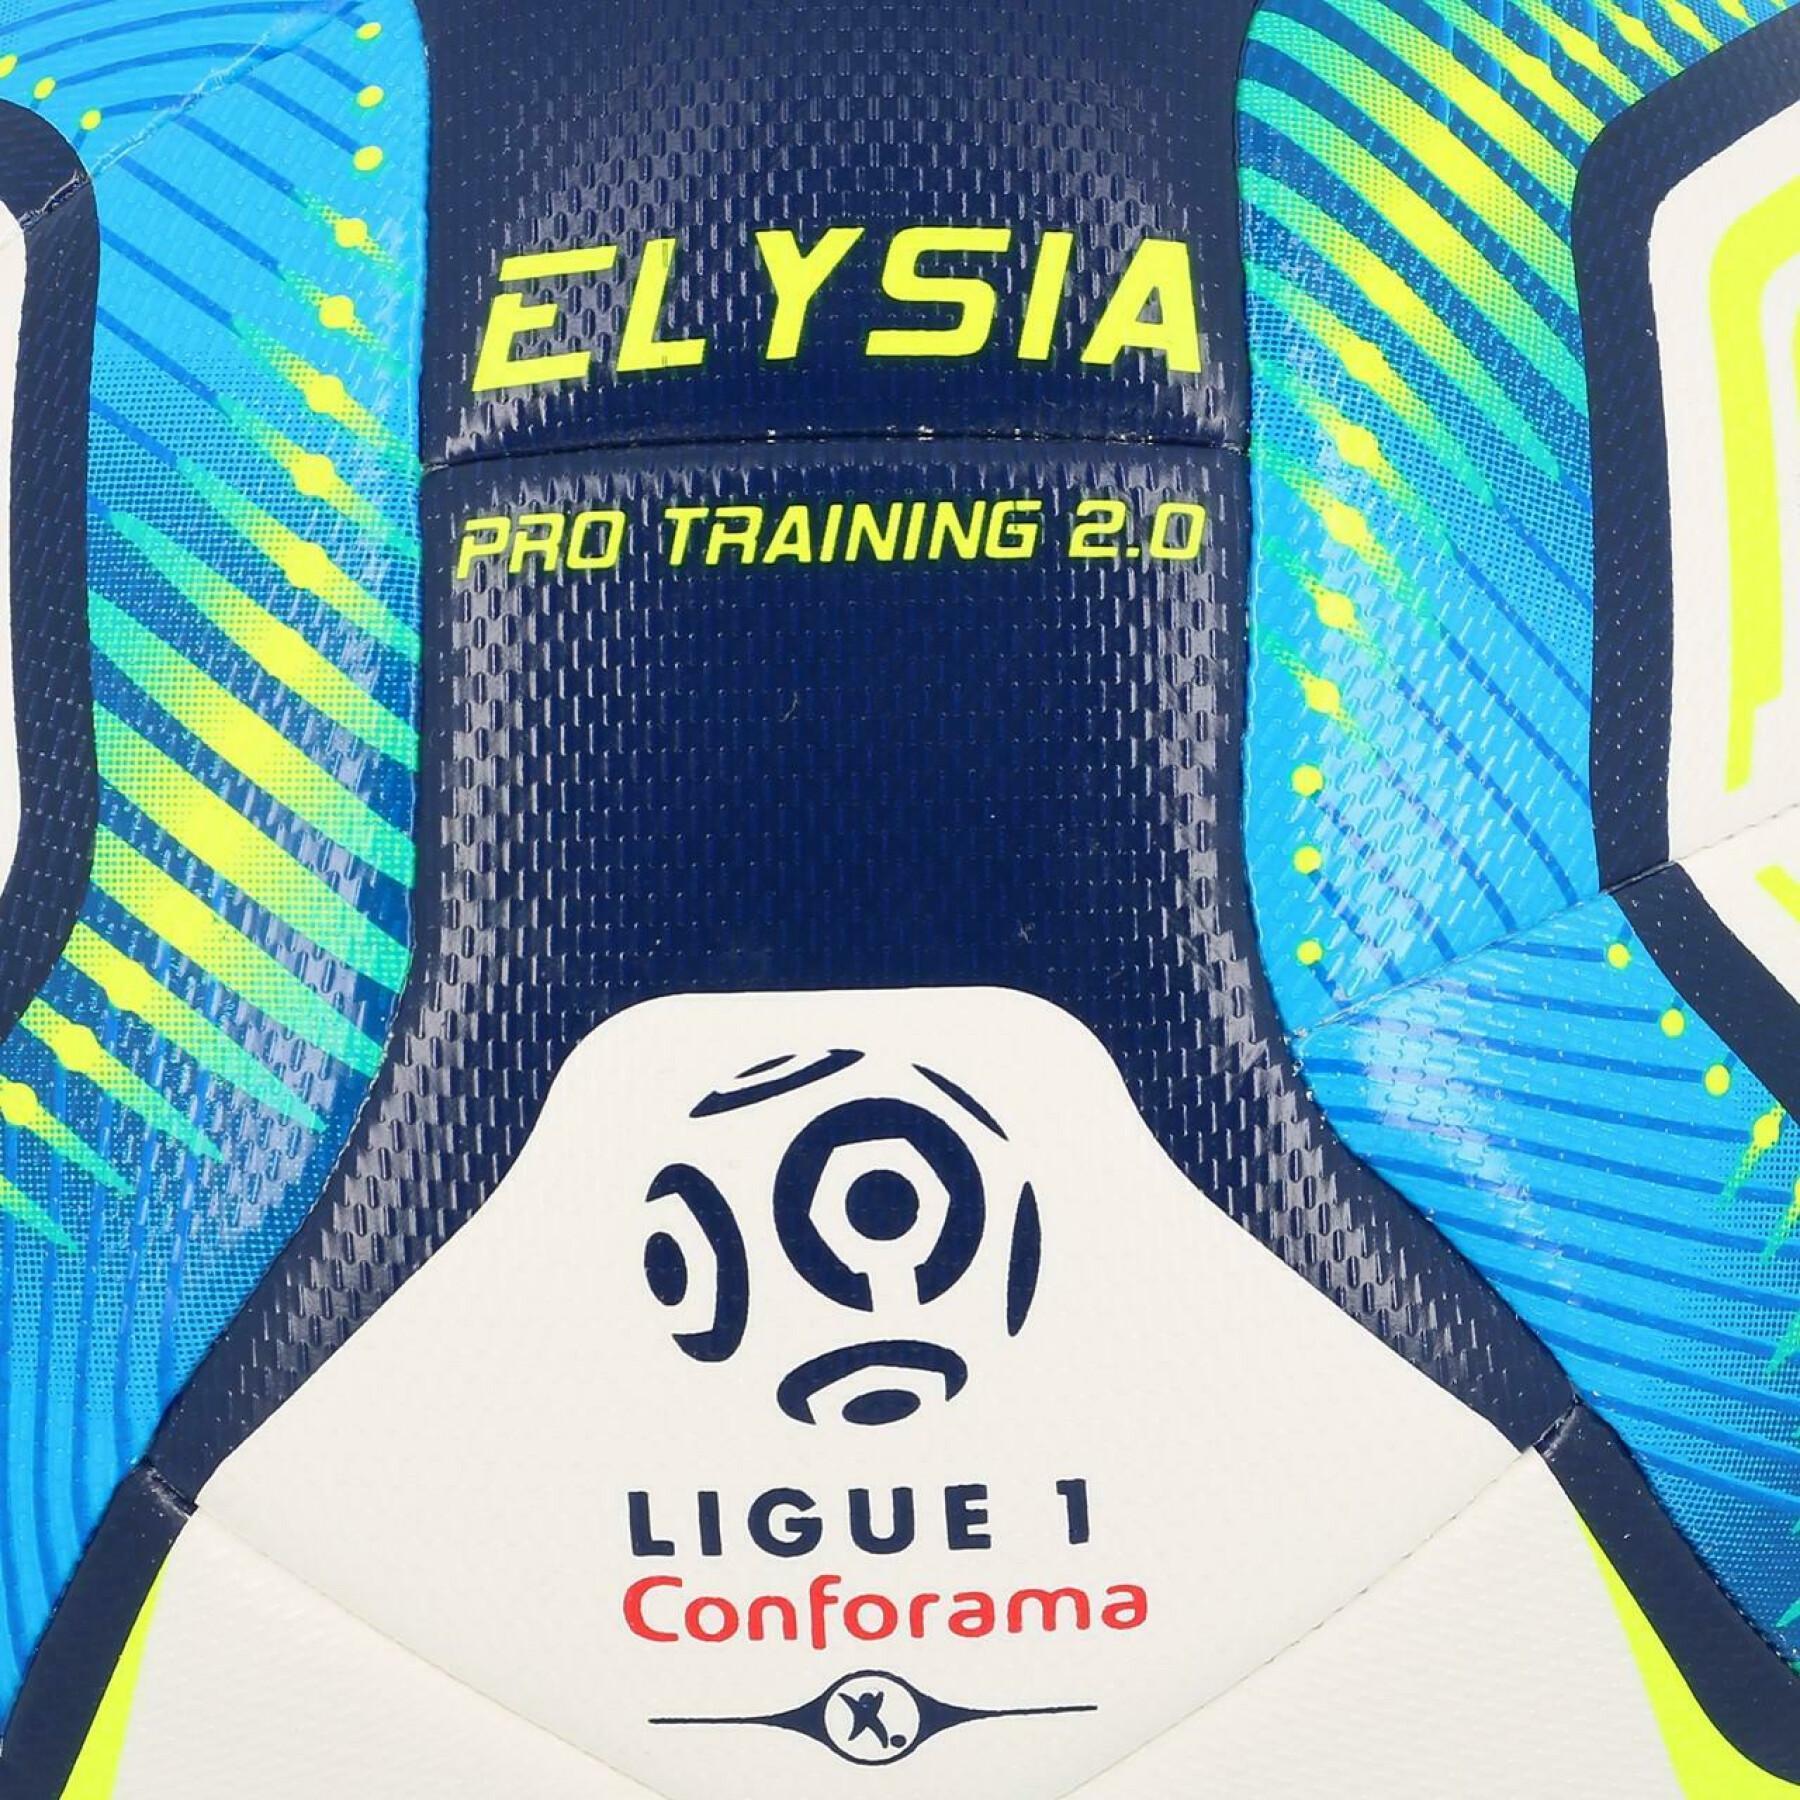 Balon Uhlsport Elysia Pro Training 2.0